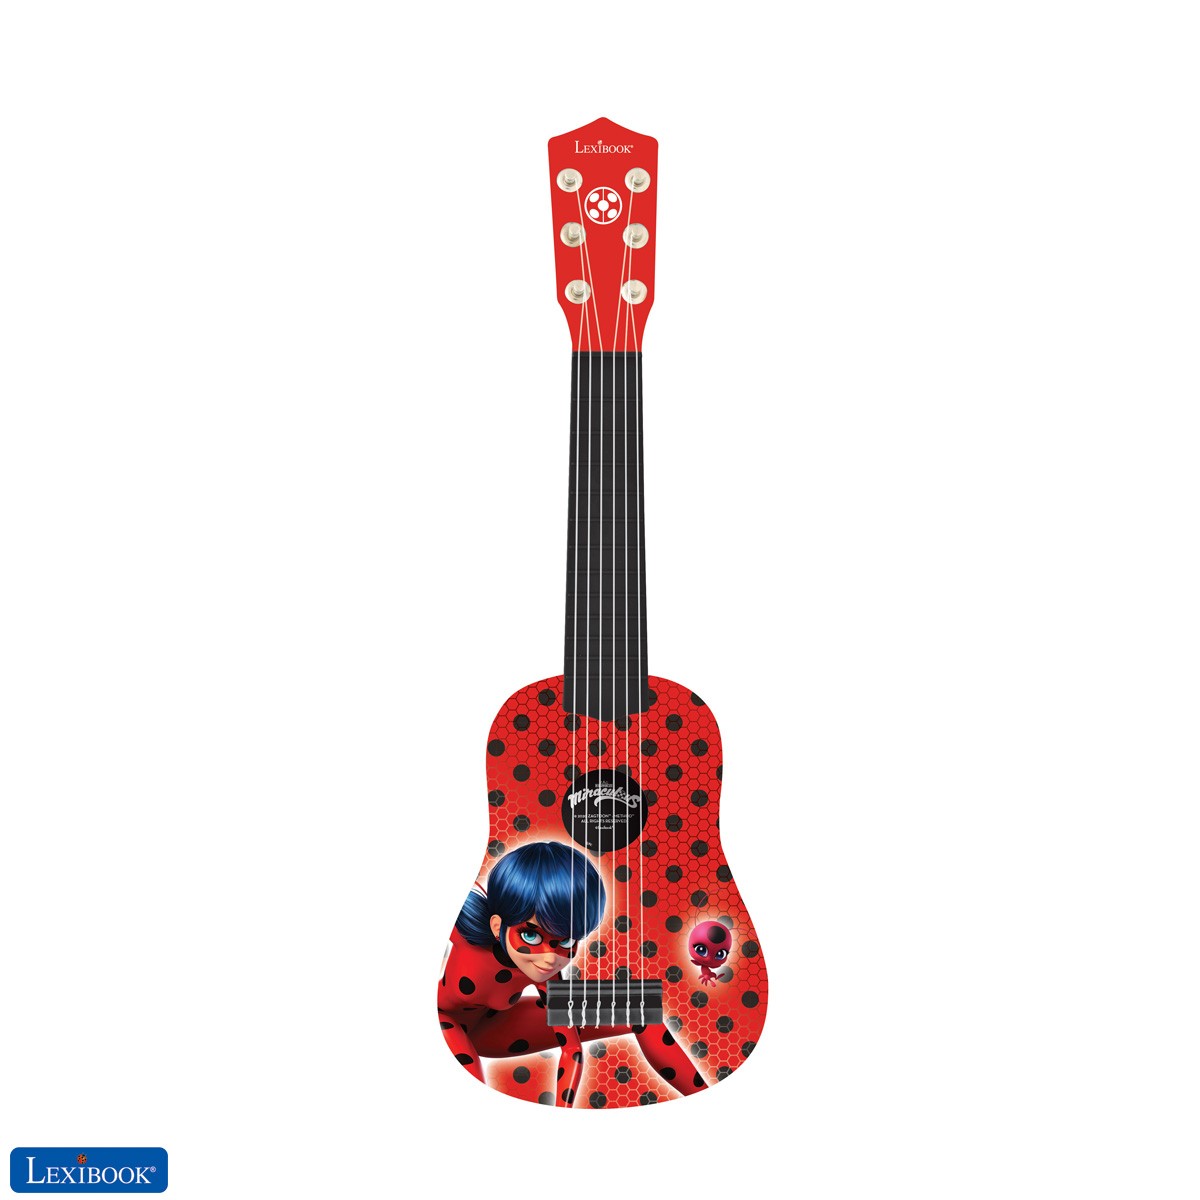 Miraculous Ladybug Meine erste Gitarre für Kinder